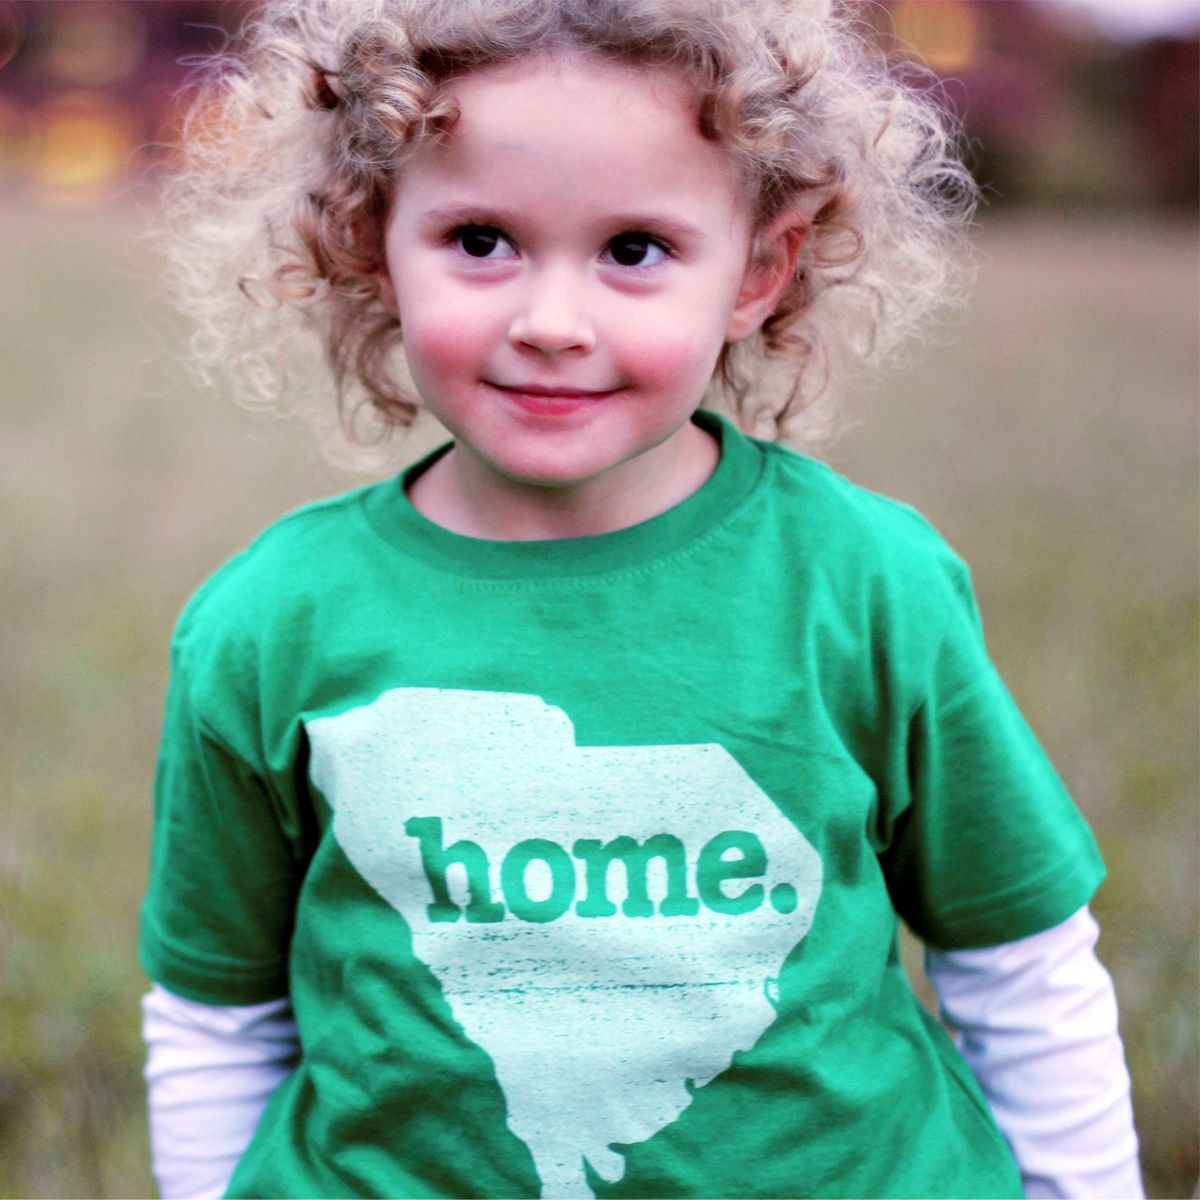 home. Youth/Toddler T-Shirt - North Carolina